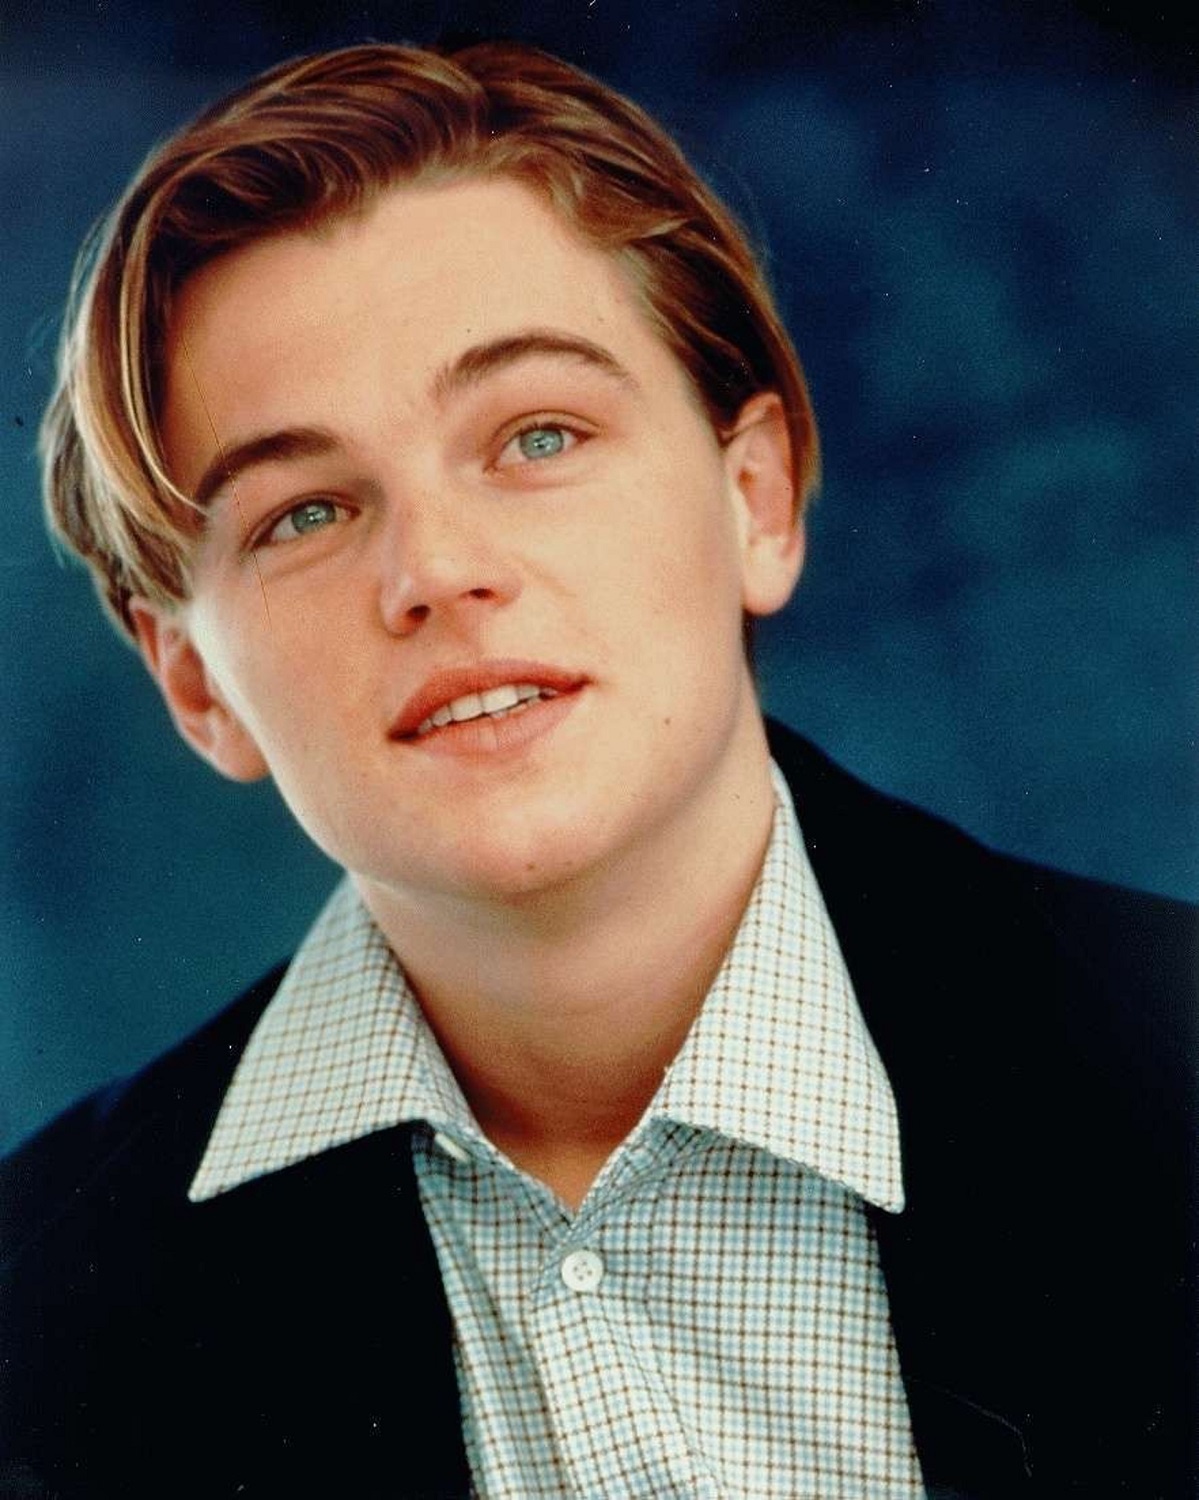 Dàn mỹ nam huyền thoại giờ ra sao: Tom Cruise, Brad Pitt U60 vẫn phong độ, Leonardo bị ngải heo nhập chưa bằng loạt nam thần hói dần đều - Ảnh 2.